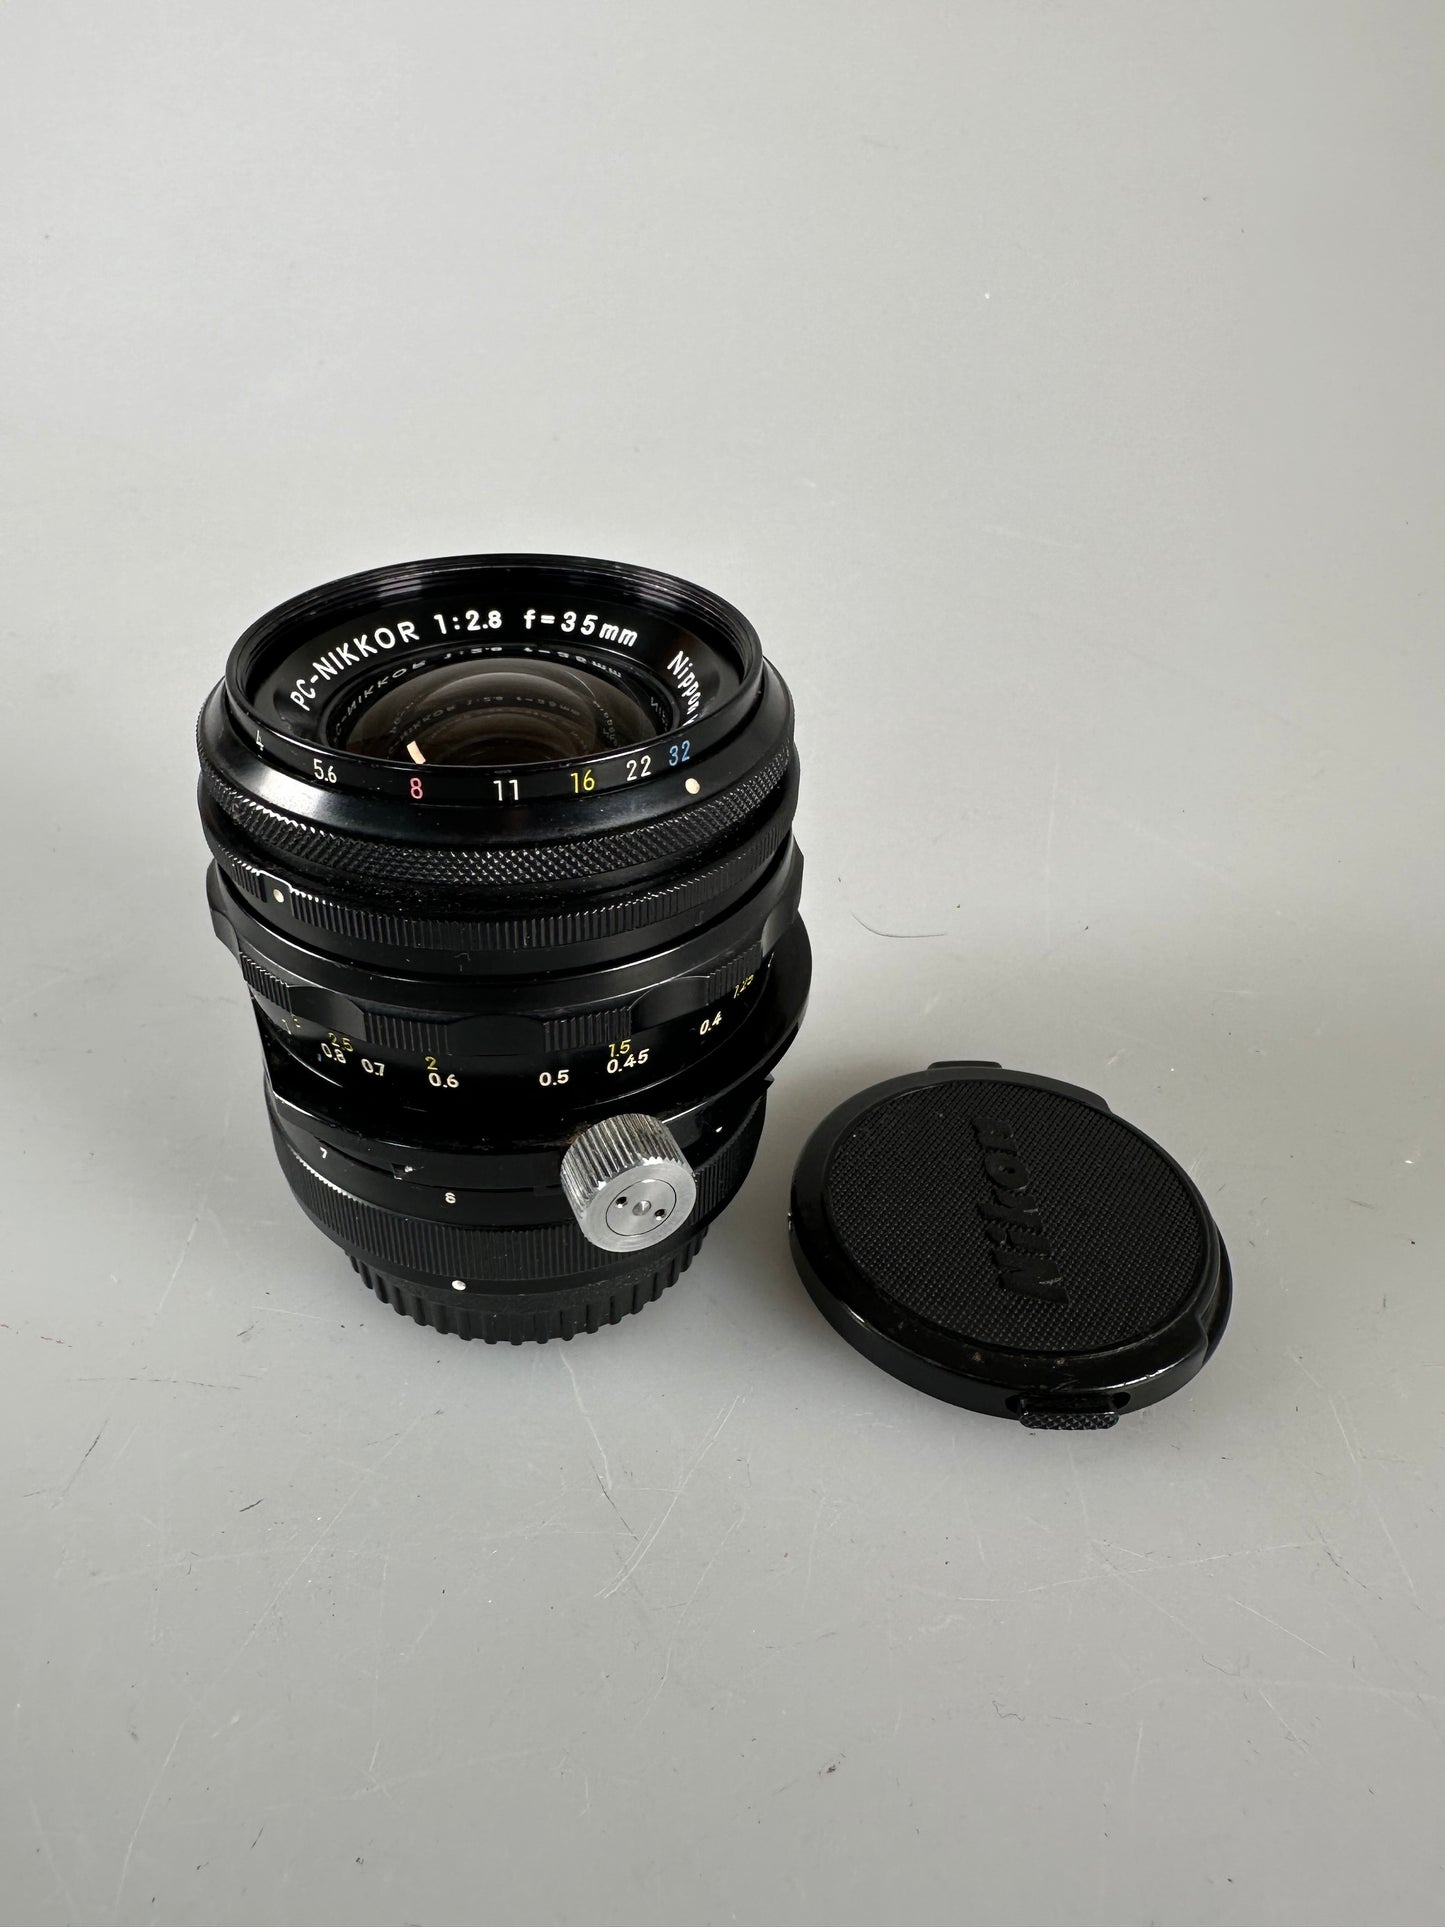 Nikon 35mm f2.8 Nikkor PC Manual Focus Lens